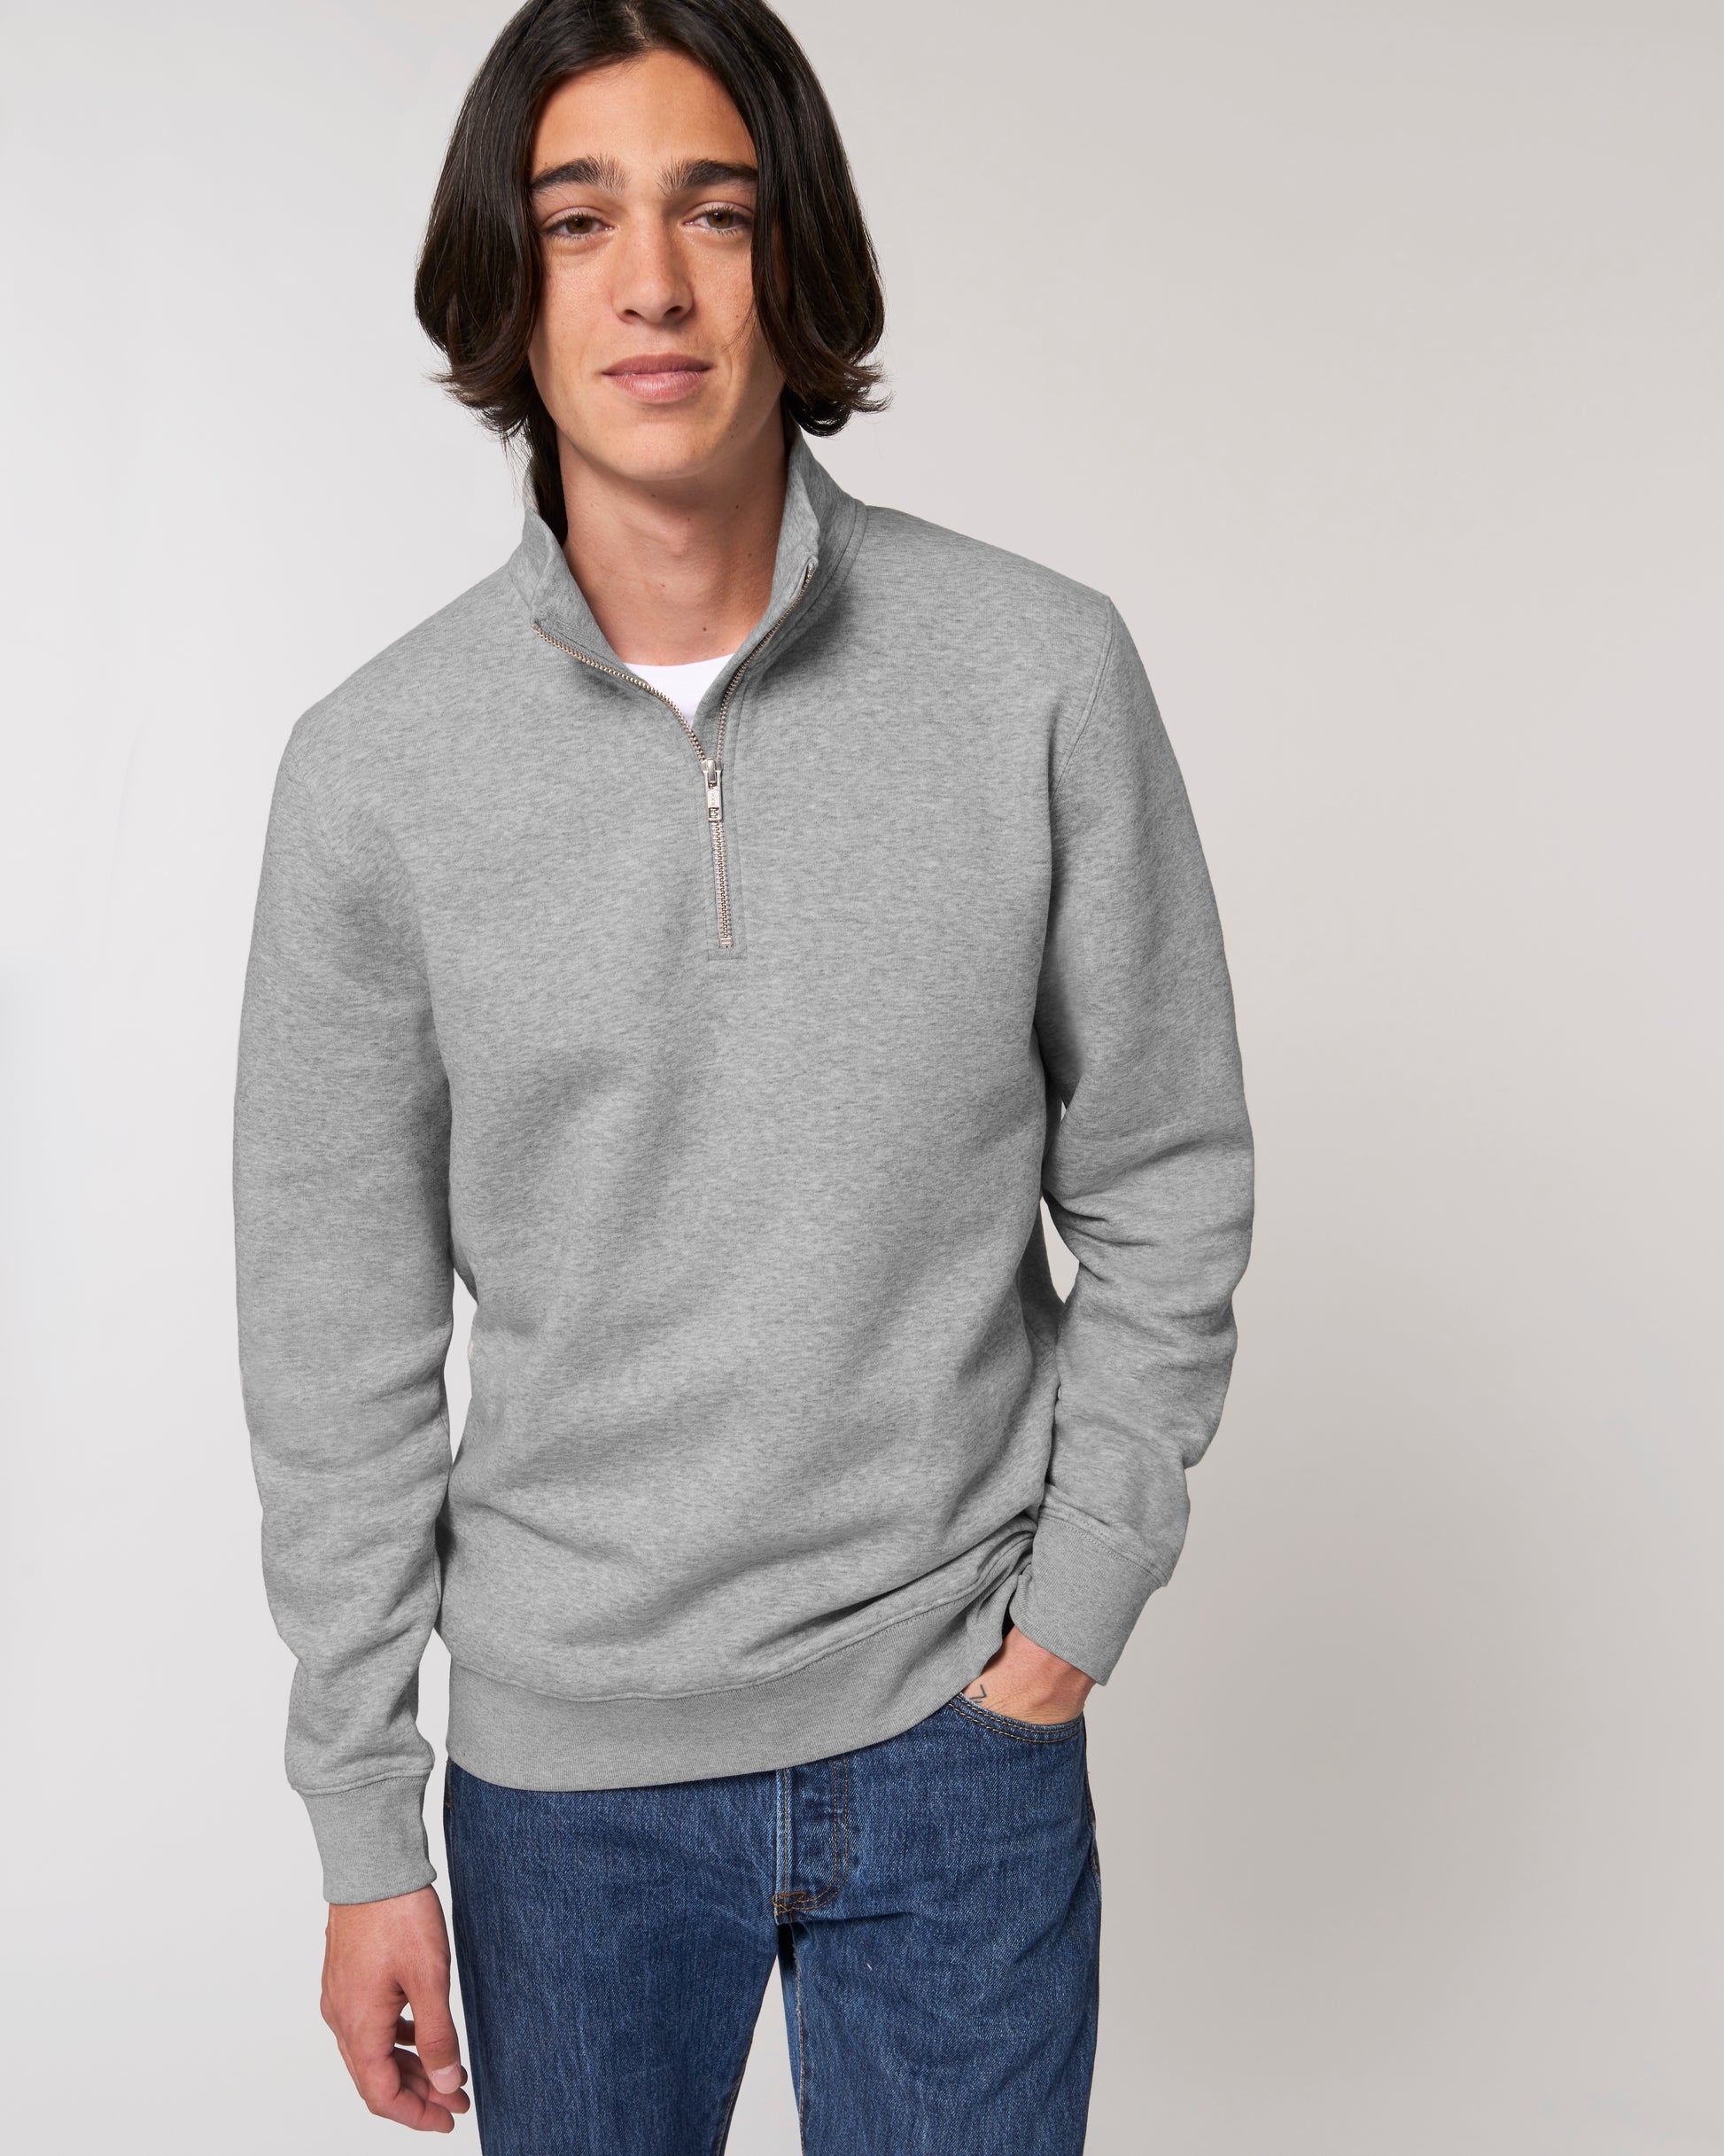 Custom quarter zip sweatshirt